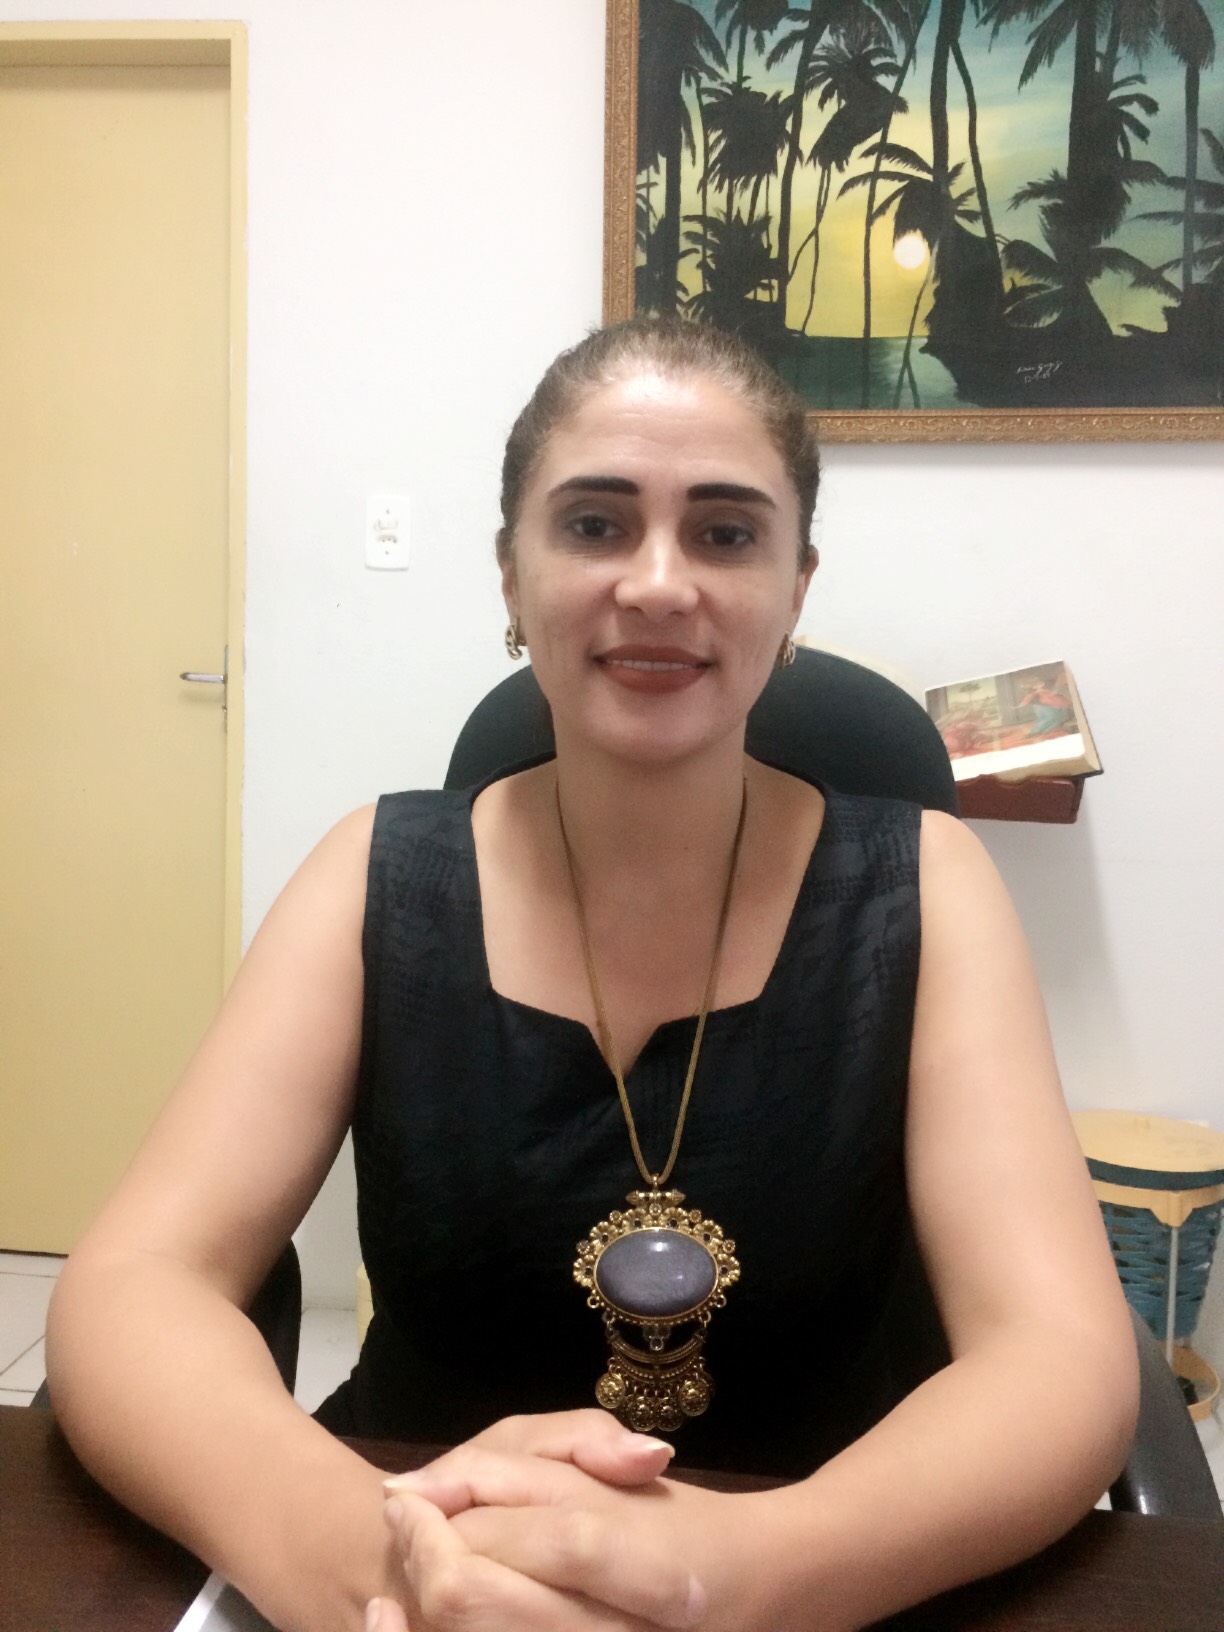 Entrevista - Iris Cristina Lima, nova diretora do Colégio Ruy Barbosa